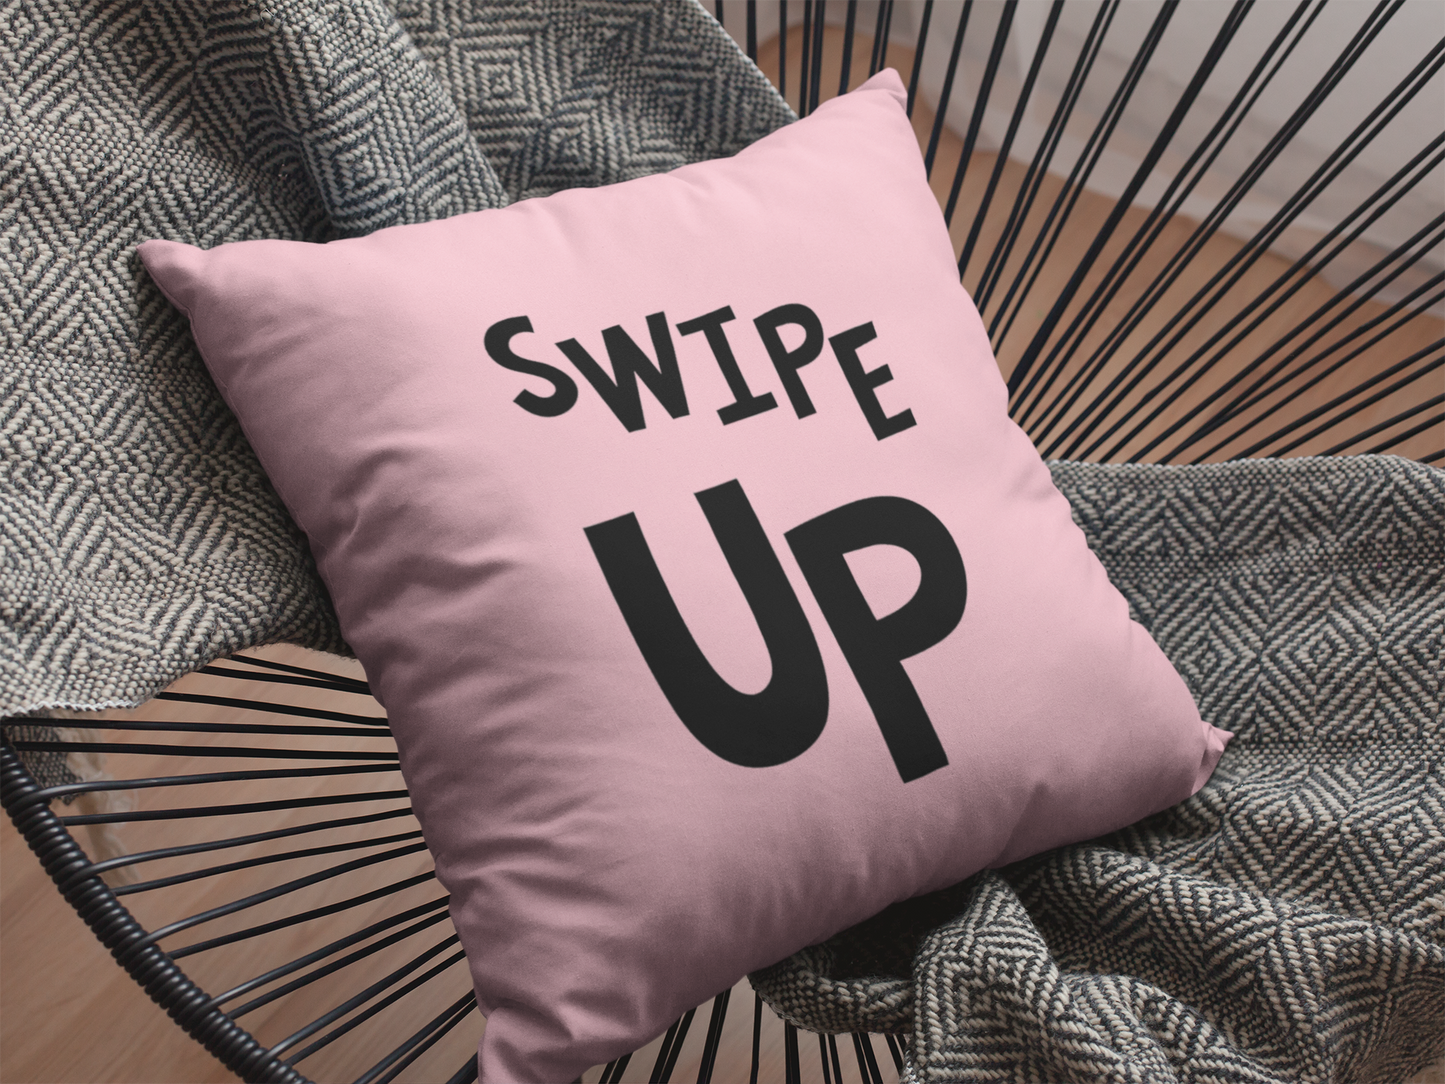 Swipe Up Printed Cushion